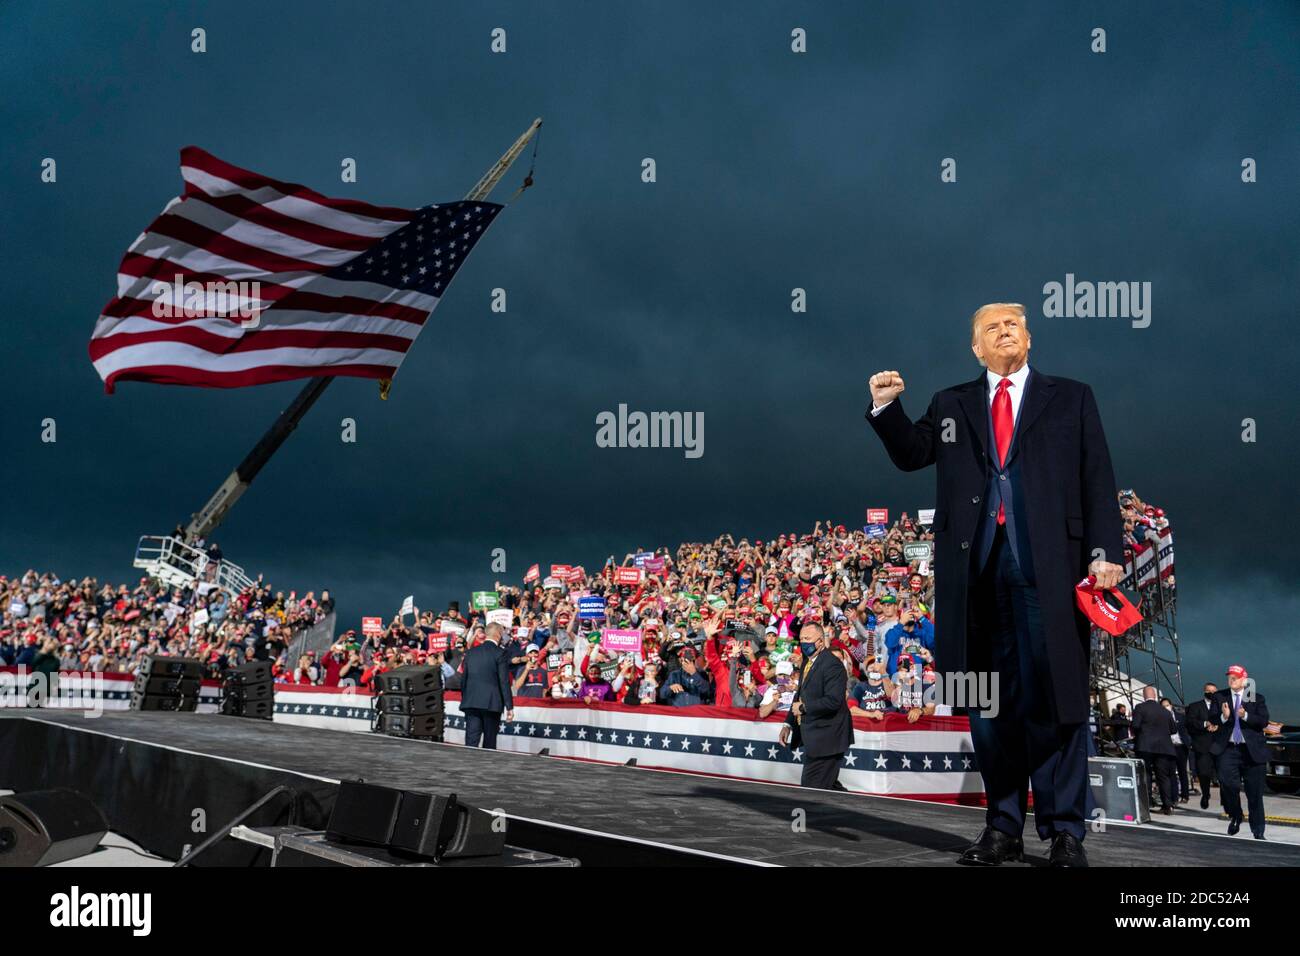 LE président AMÉRICAIN Donald Trump arrive à un événement de campagne Make America Great Again à l'aéroport international de des Moines le 14 octobre 2020 à des Moines, Iowa. Trump fait campagne une semaine après avoir récupéré de COVID-19. Crédit : Alex Edelman/l'accès photo Banque D'Images